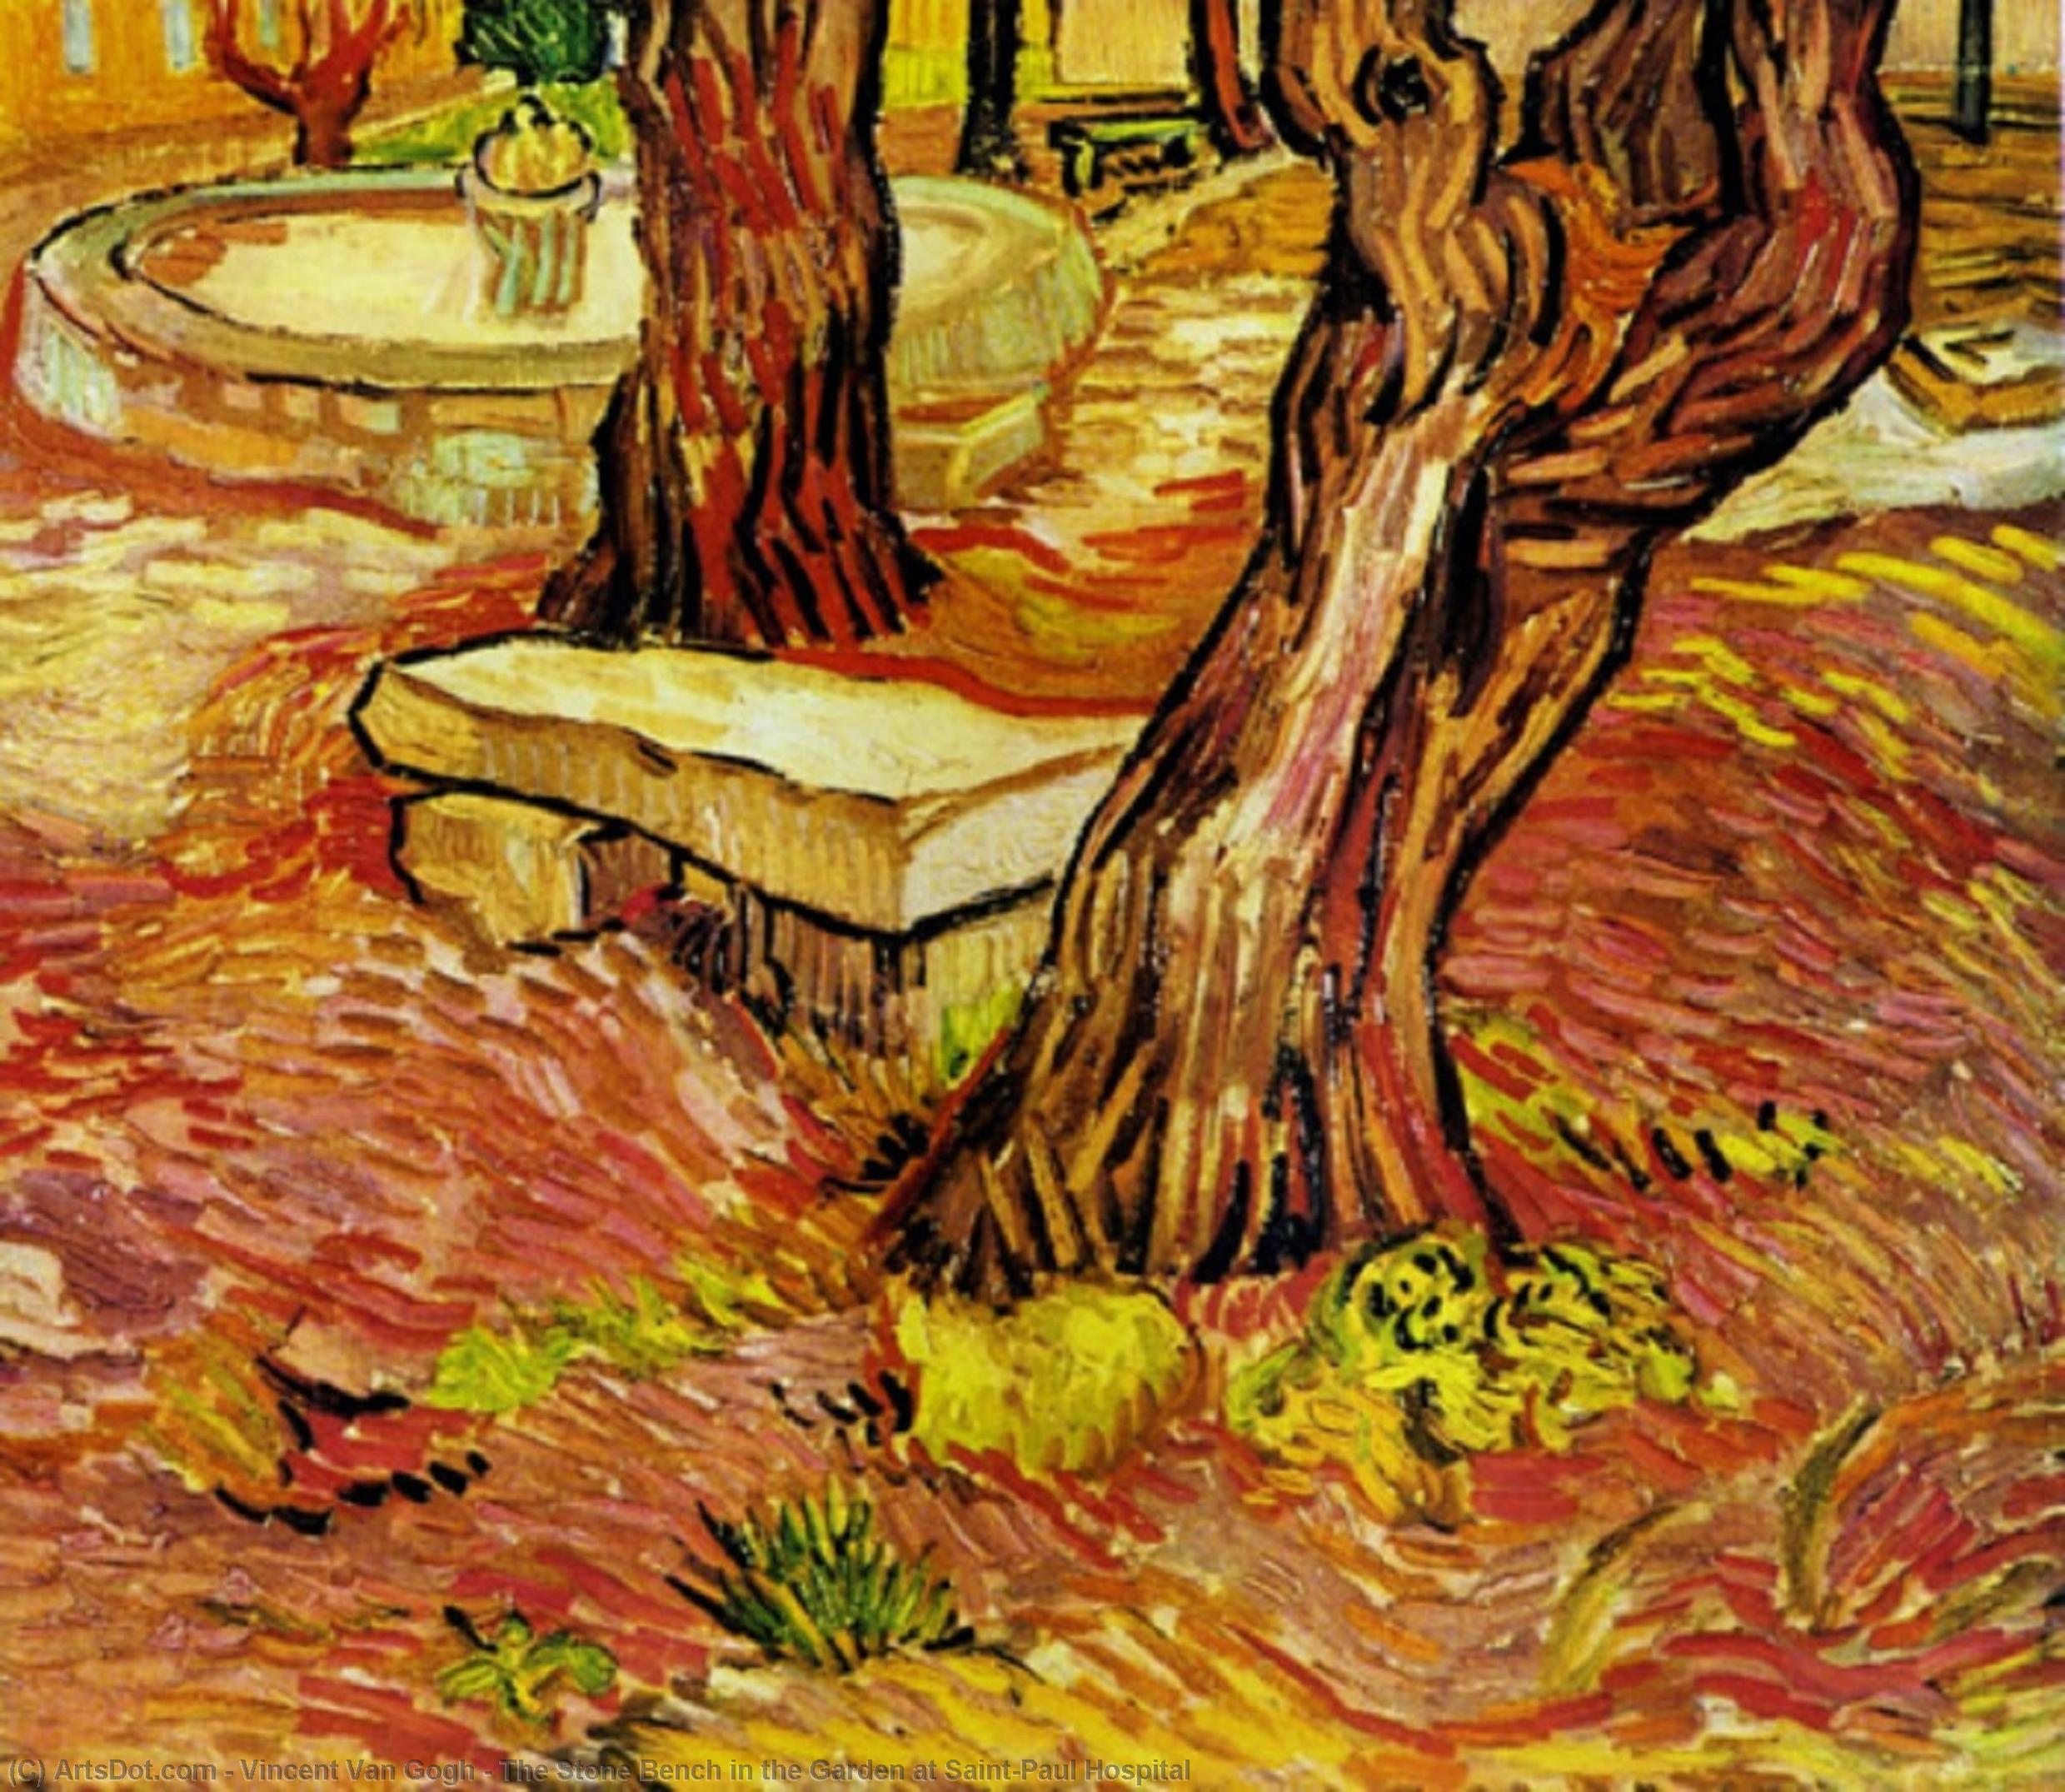 Comprar Reproducciones De Arte Del Museo The Stone Bench in the Garden at Saint-Paul Hospital, 1889 de Vincent Van Gogh (1853-1890, Netherlands) | ArtsDot.com